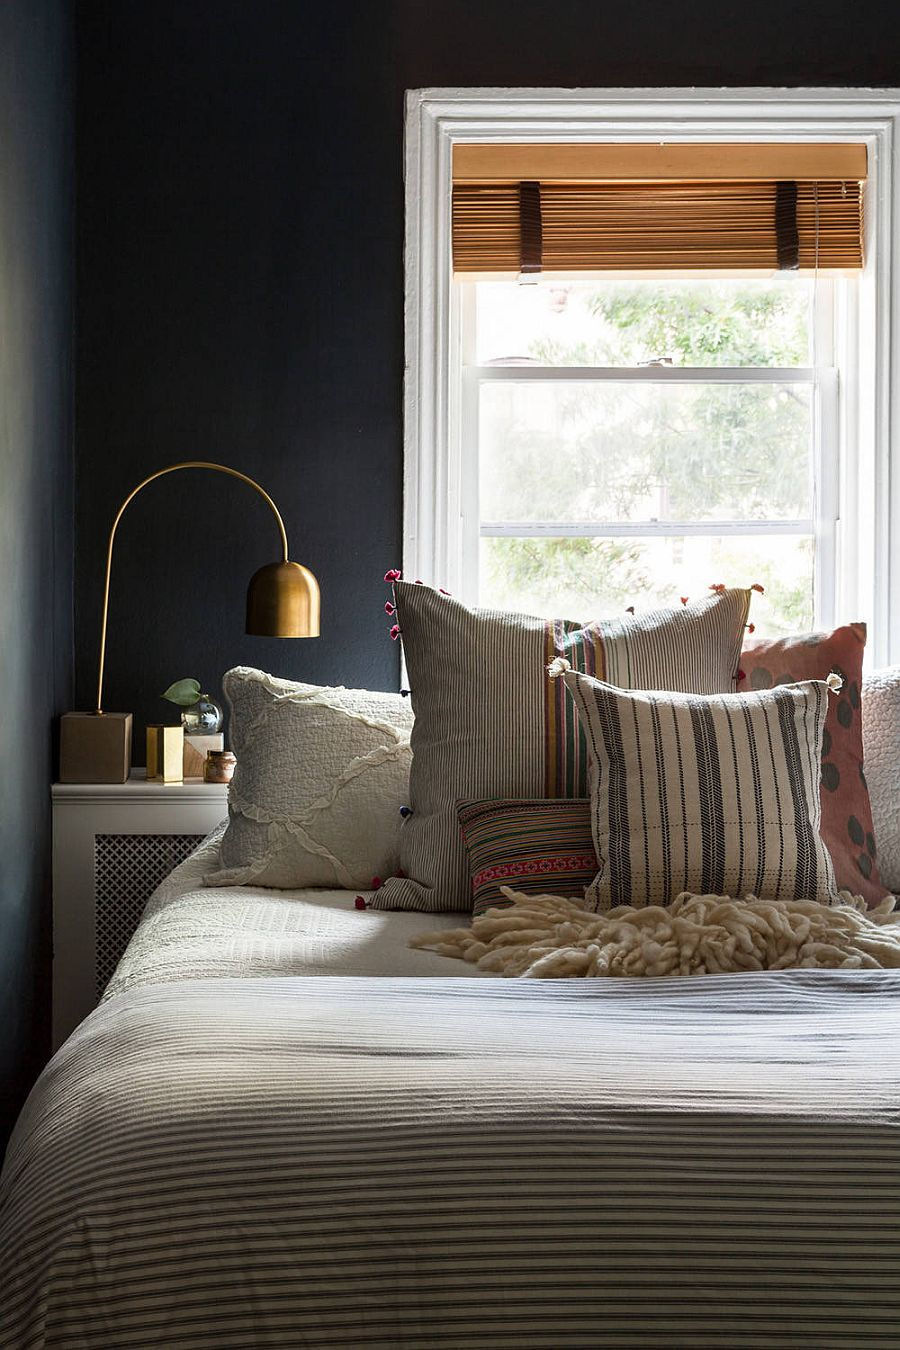 Phông nền màu xám đậm trong phòng ngủ nhỏ tạo cho nó một phong cách hiện đại.